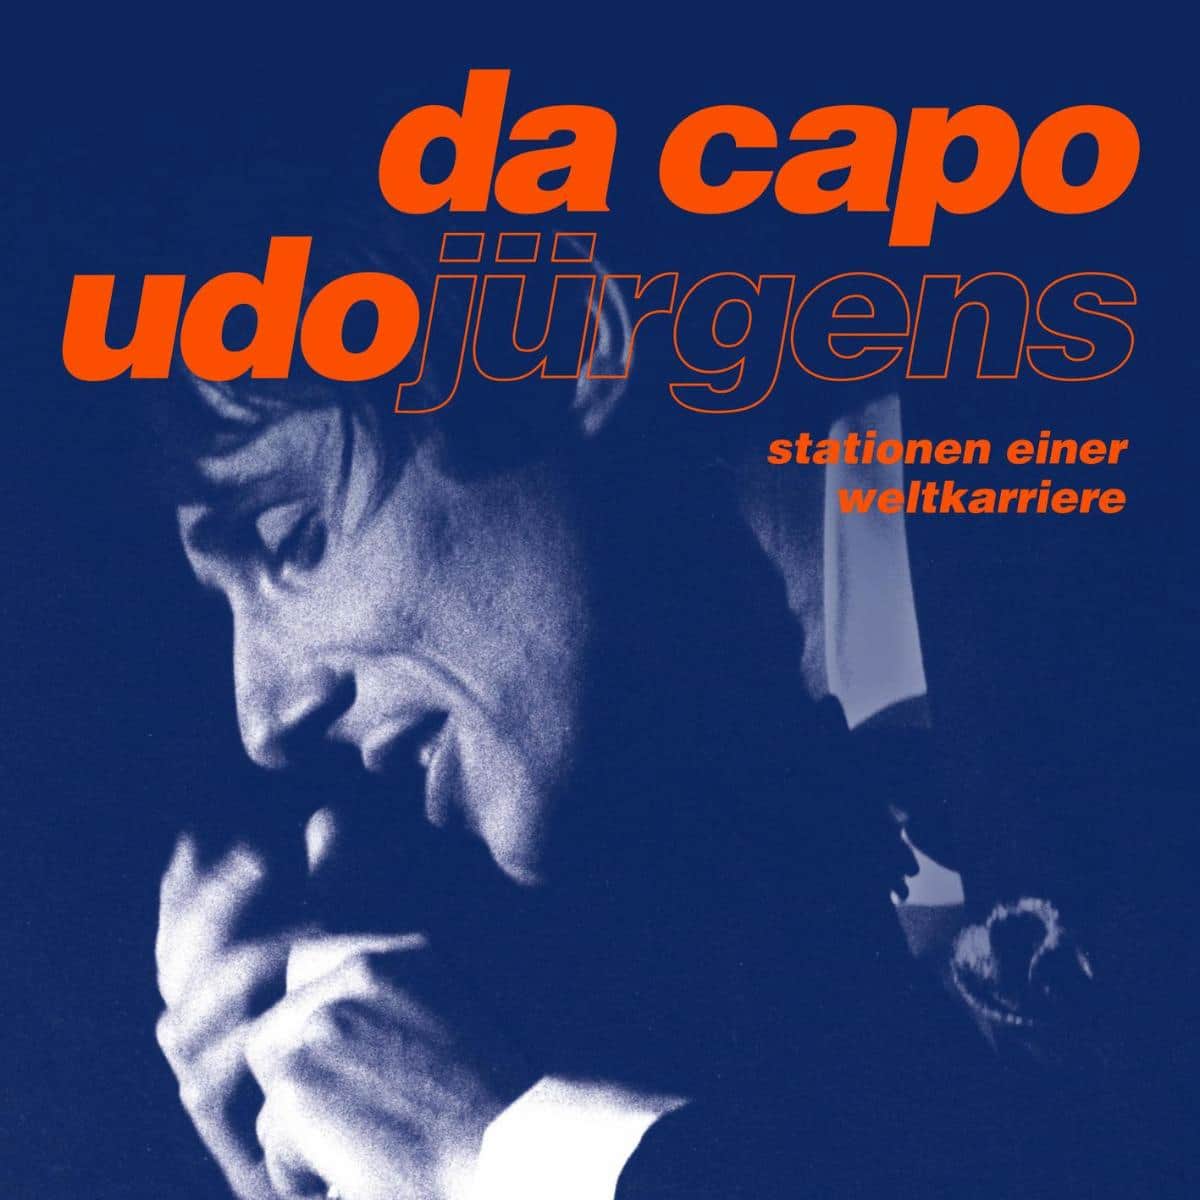 Udo Jürgens “Da Capo - Stationen Einer Weltkarriere” veröffentlicht - hier im Bild das CD-Cover